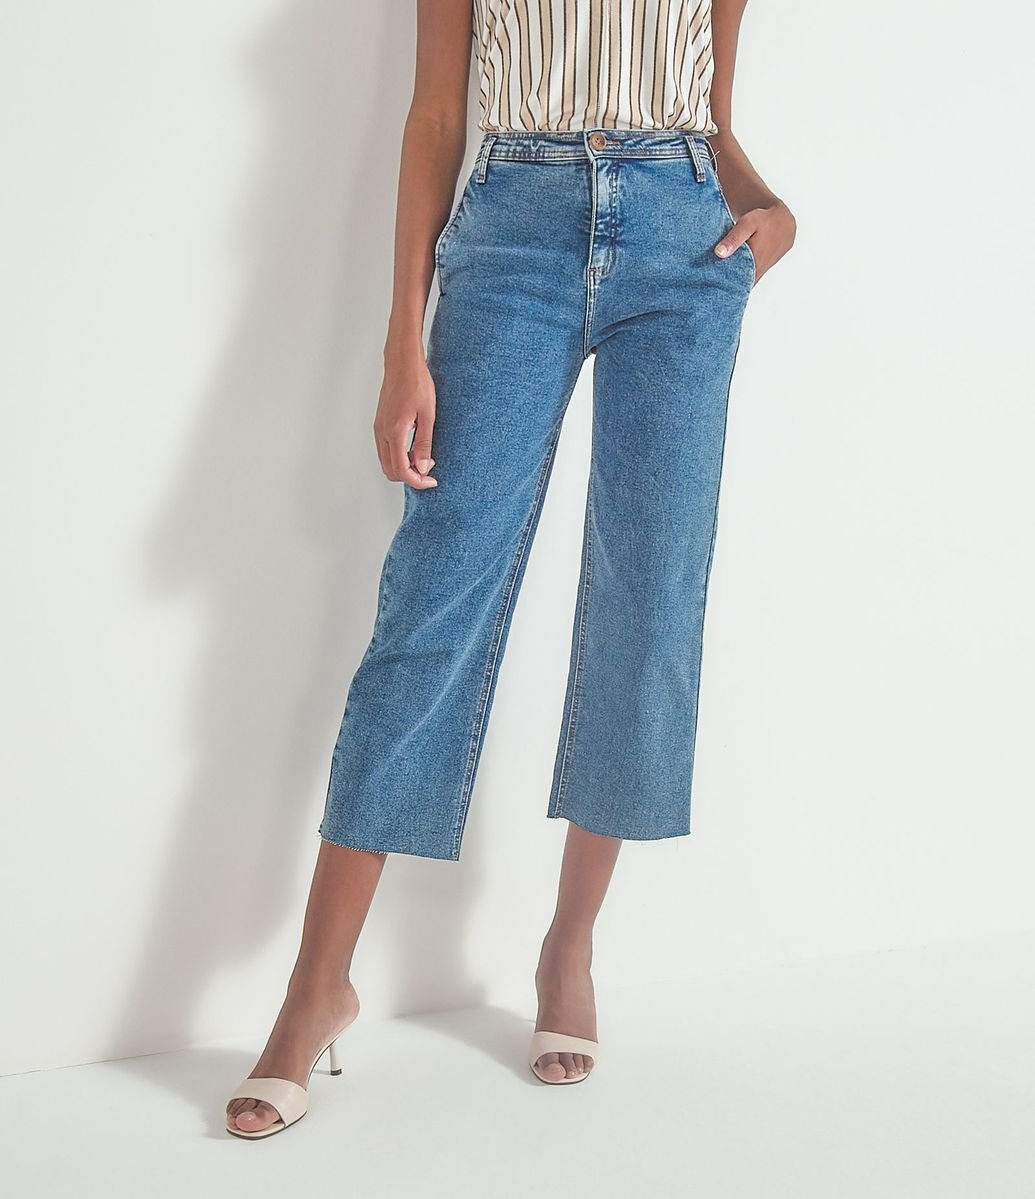 modelos de pantacourt jeans